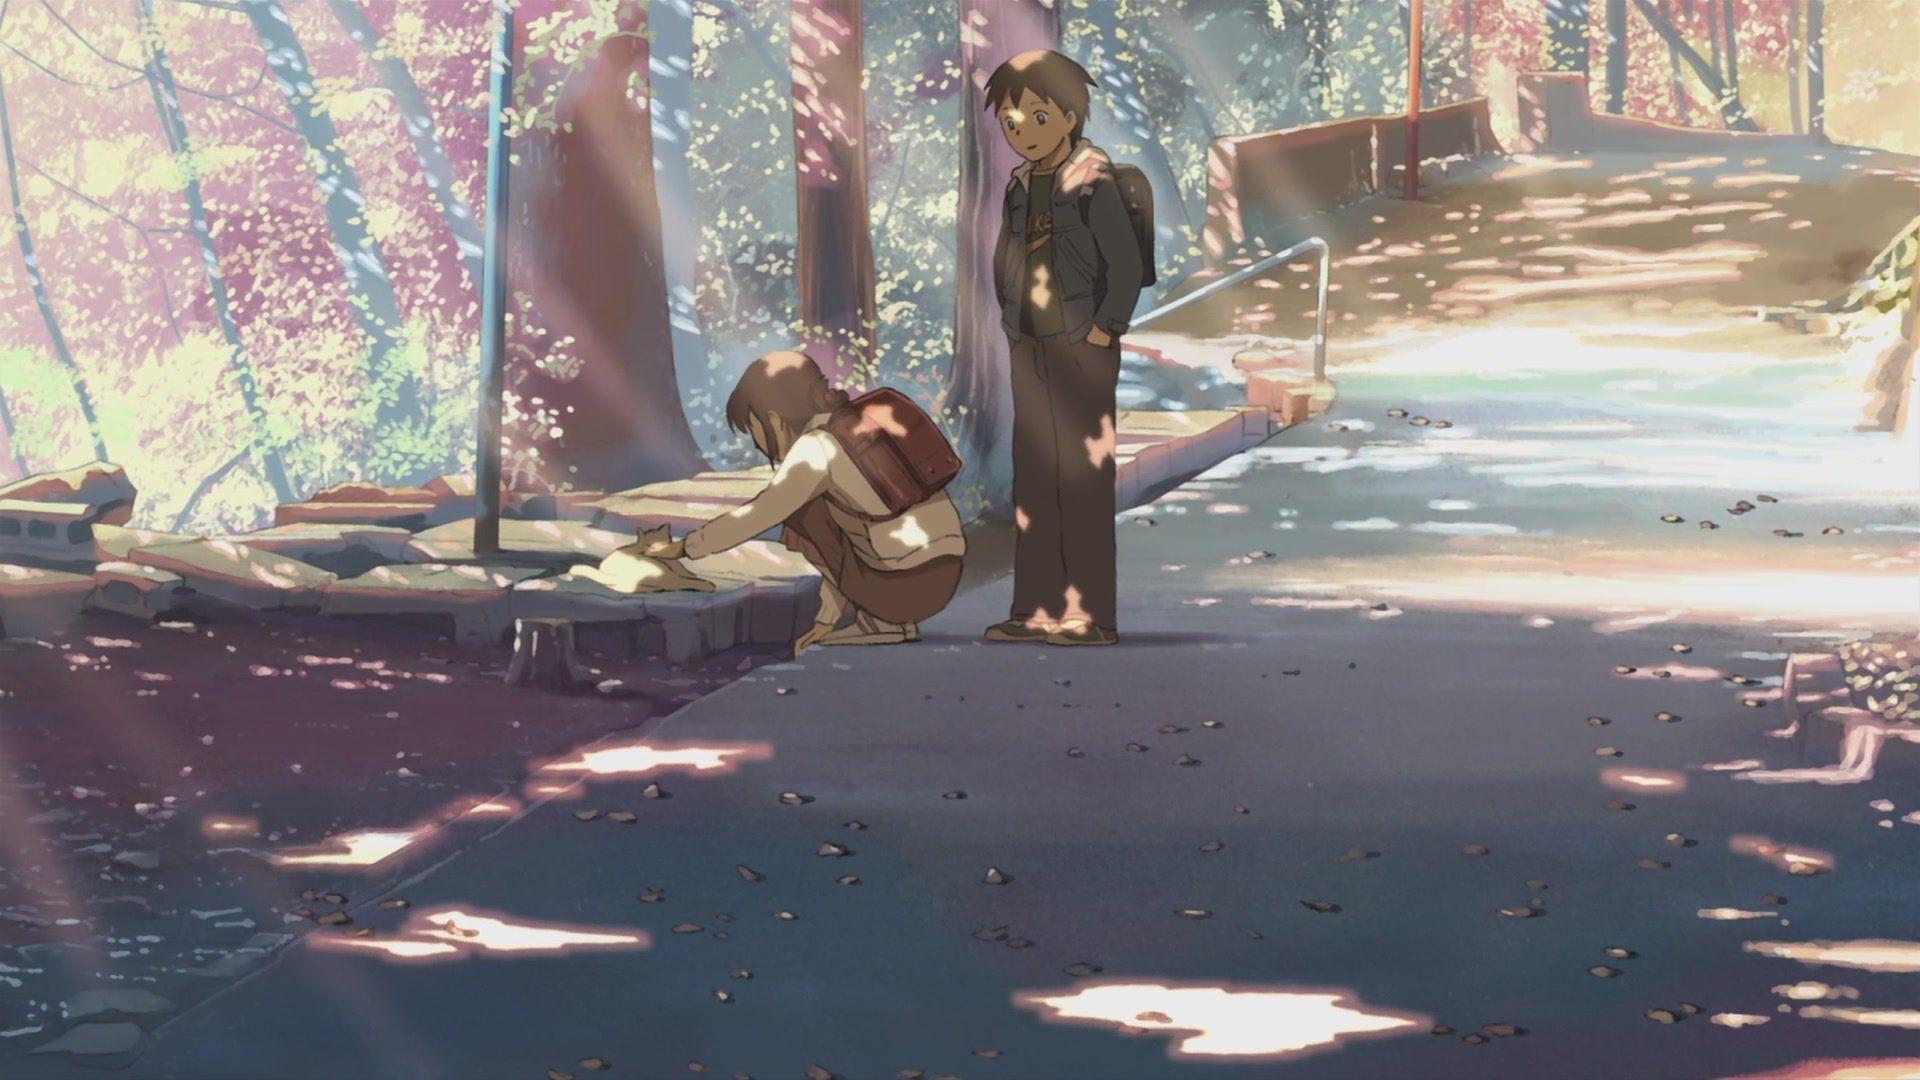 Makoto Shinkai's Distance in 5 Centimeters per Second